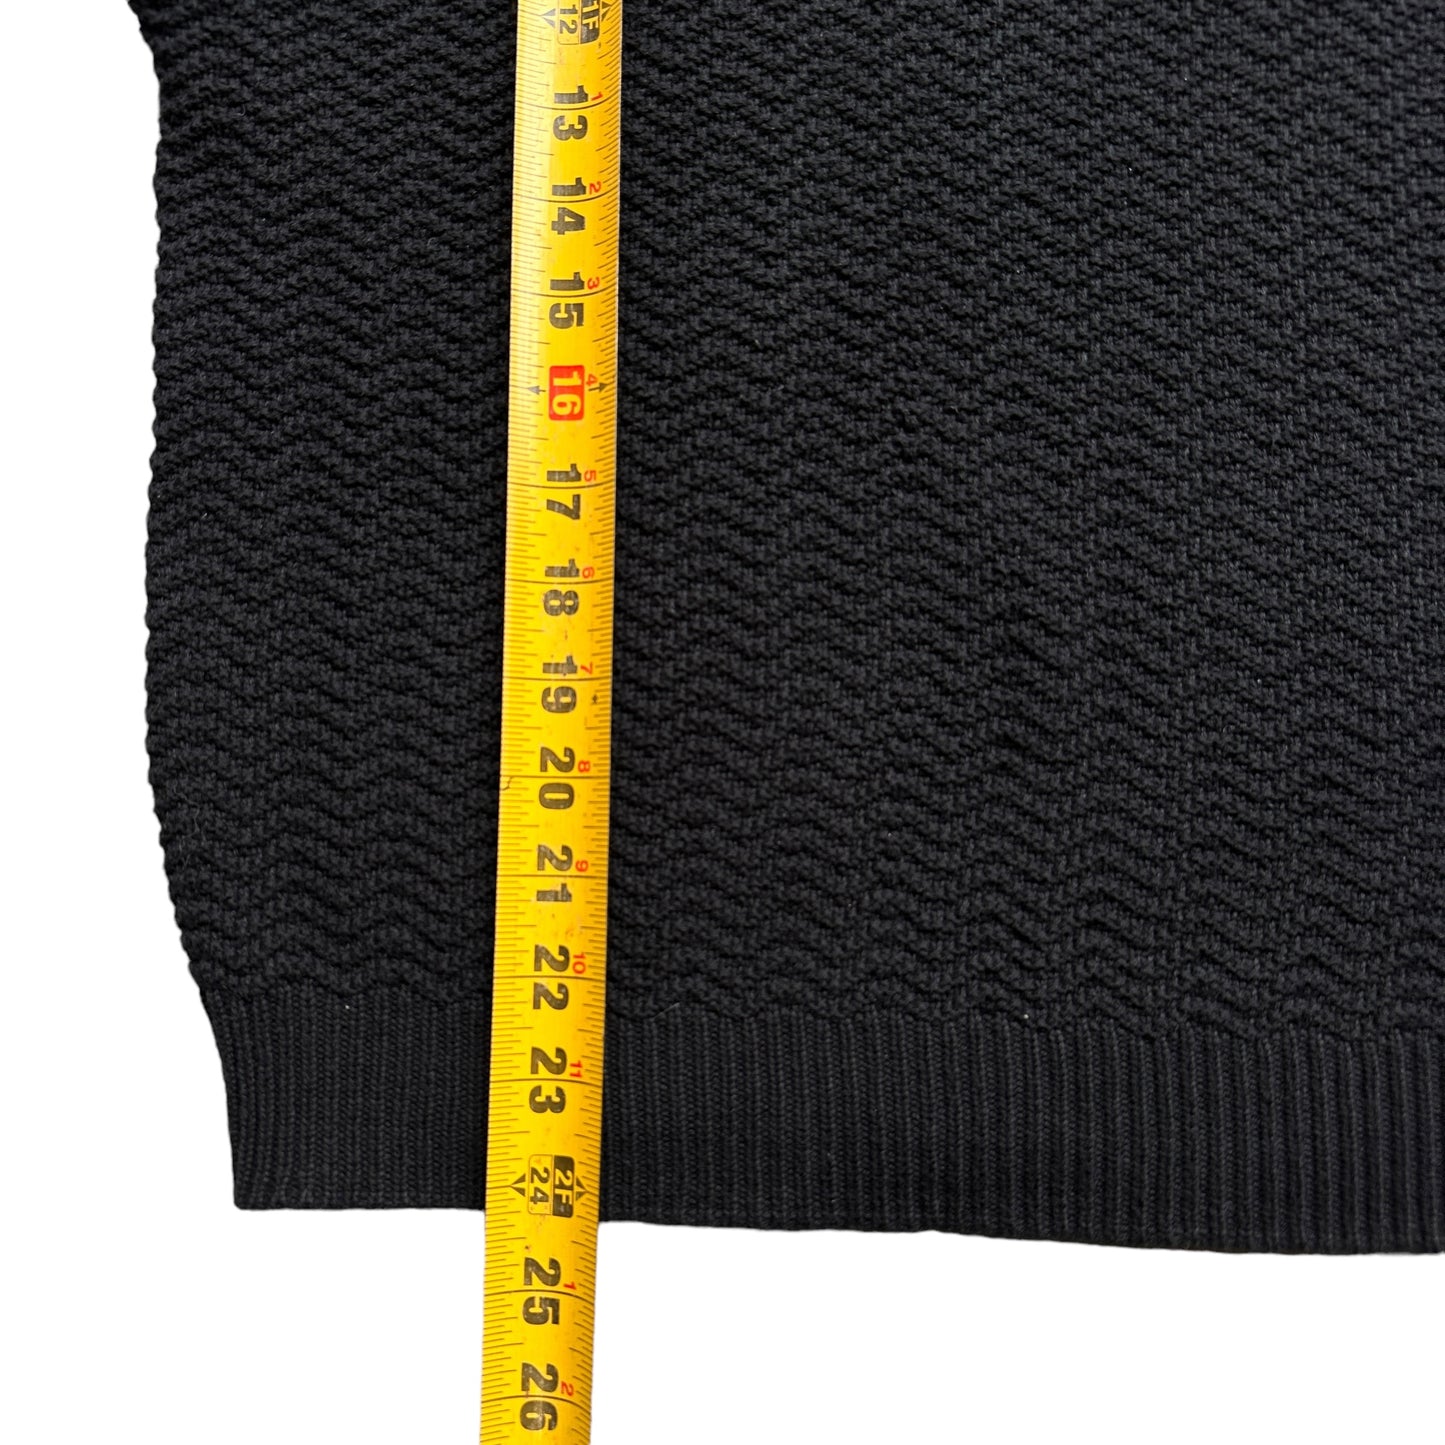 Woven cotton sweater vest large